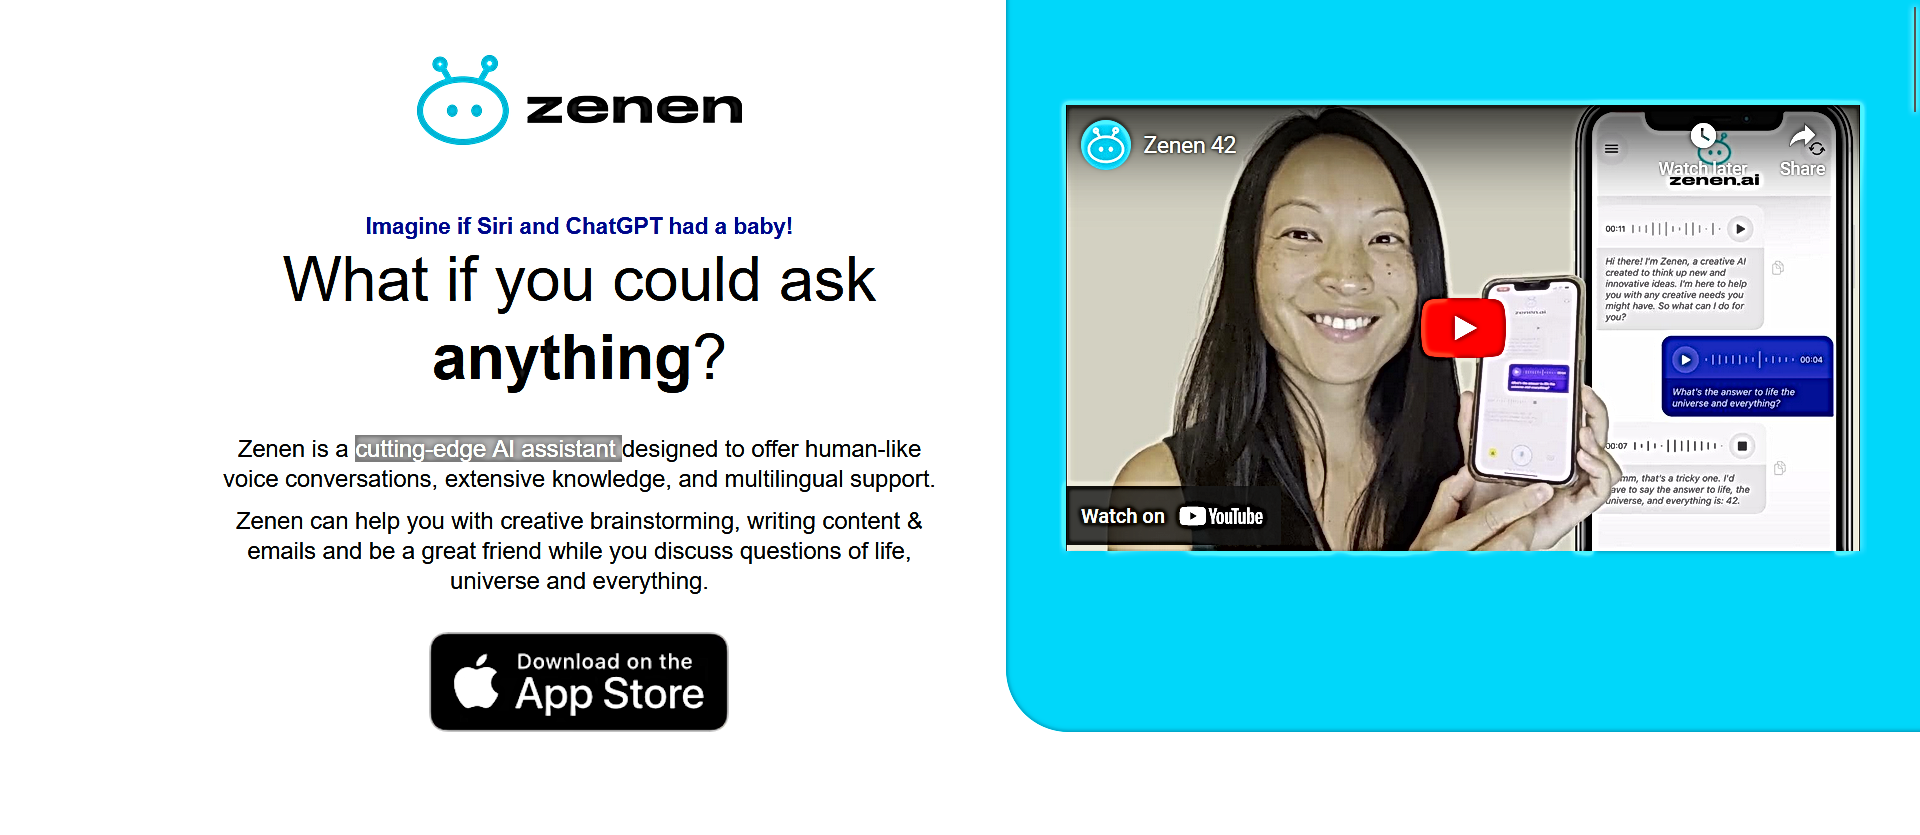 Zenen AI Friend Chat Assistant featured